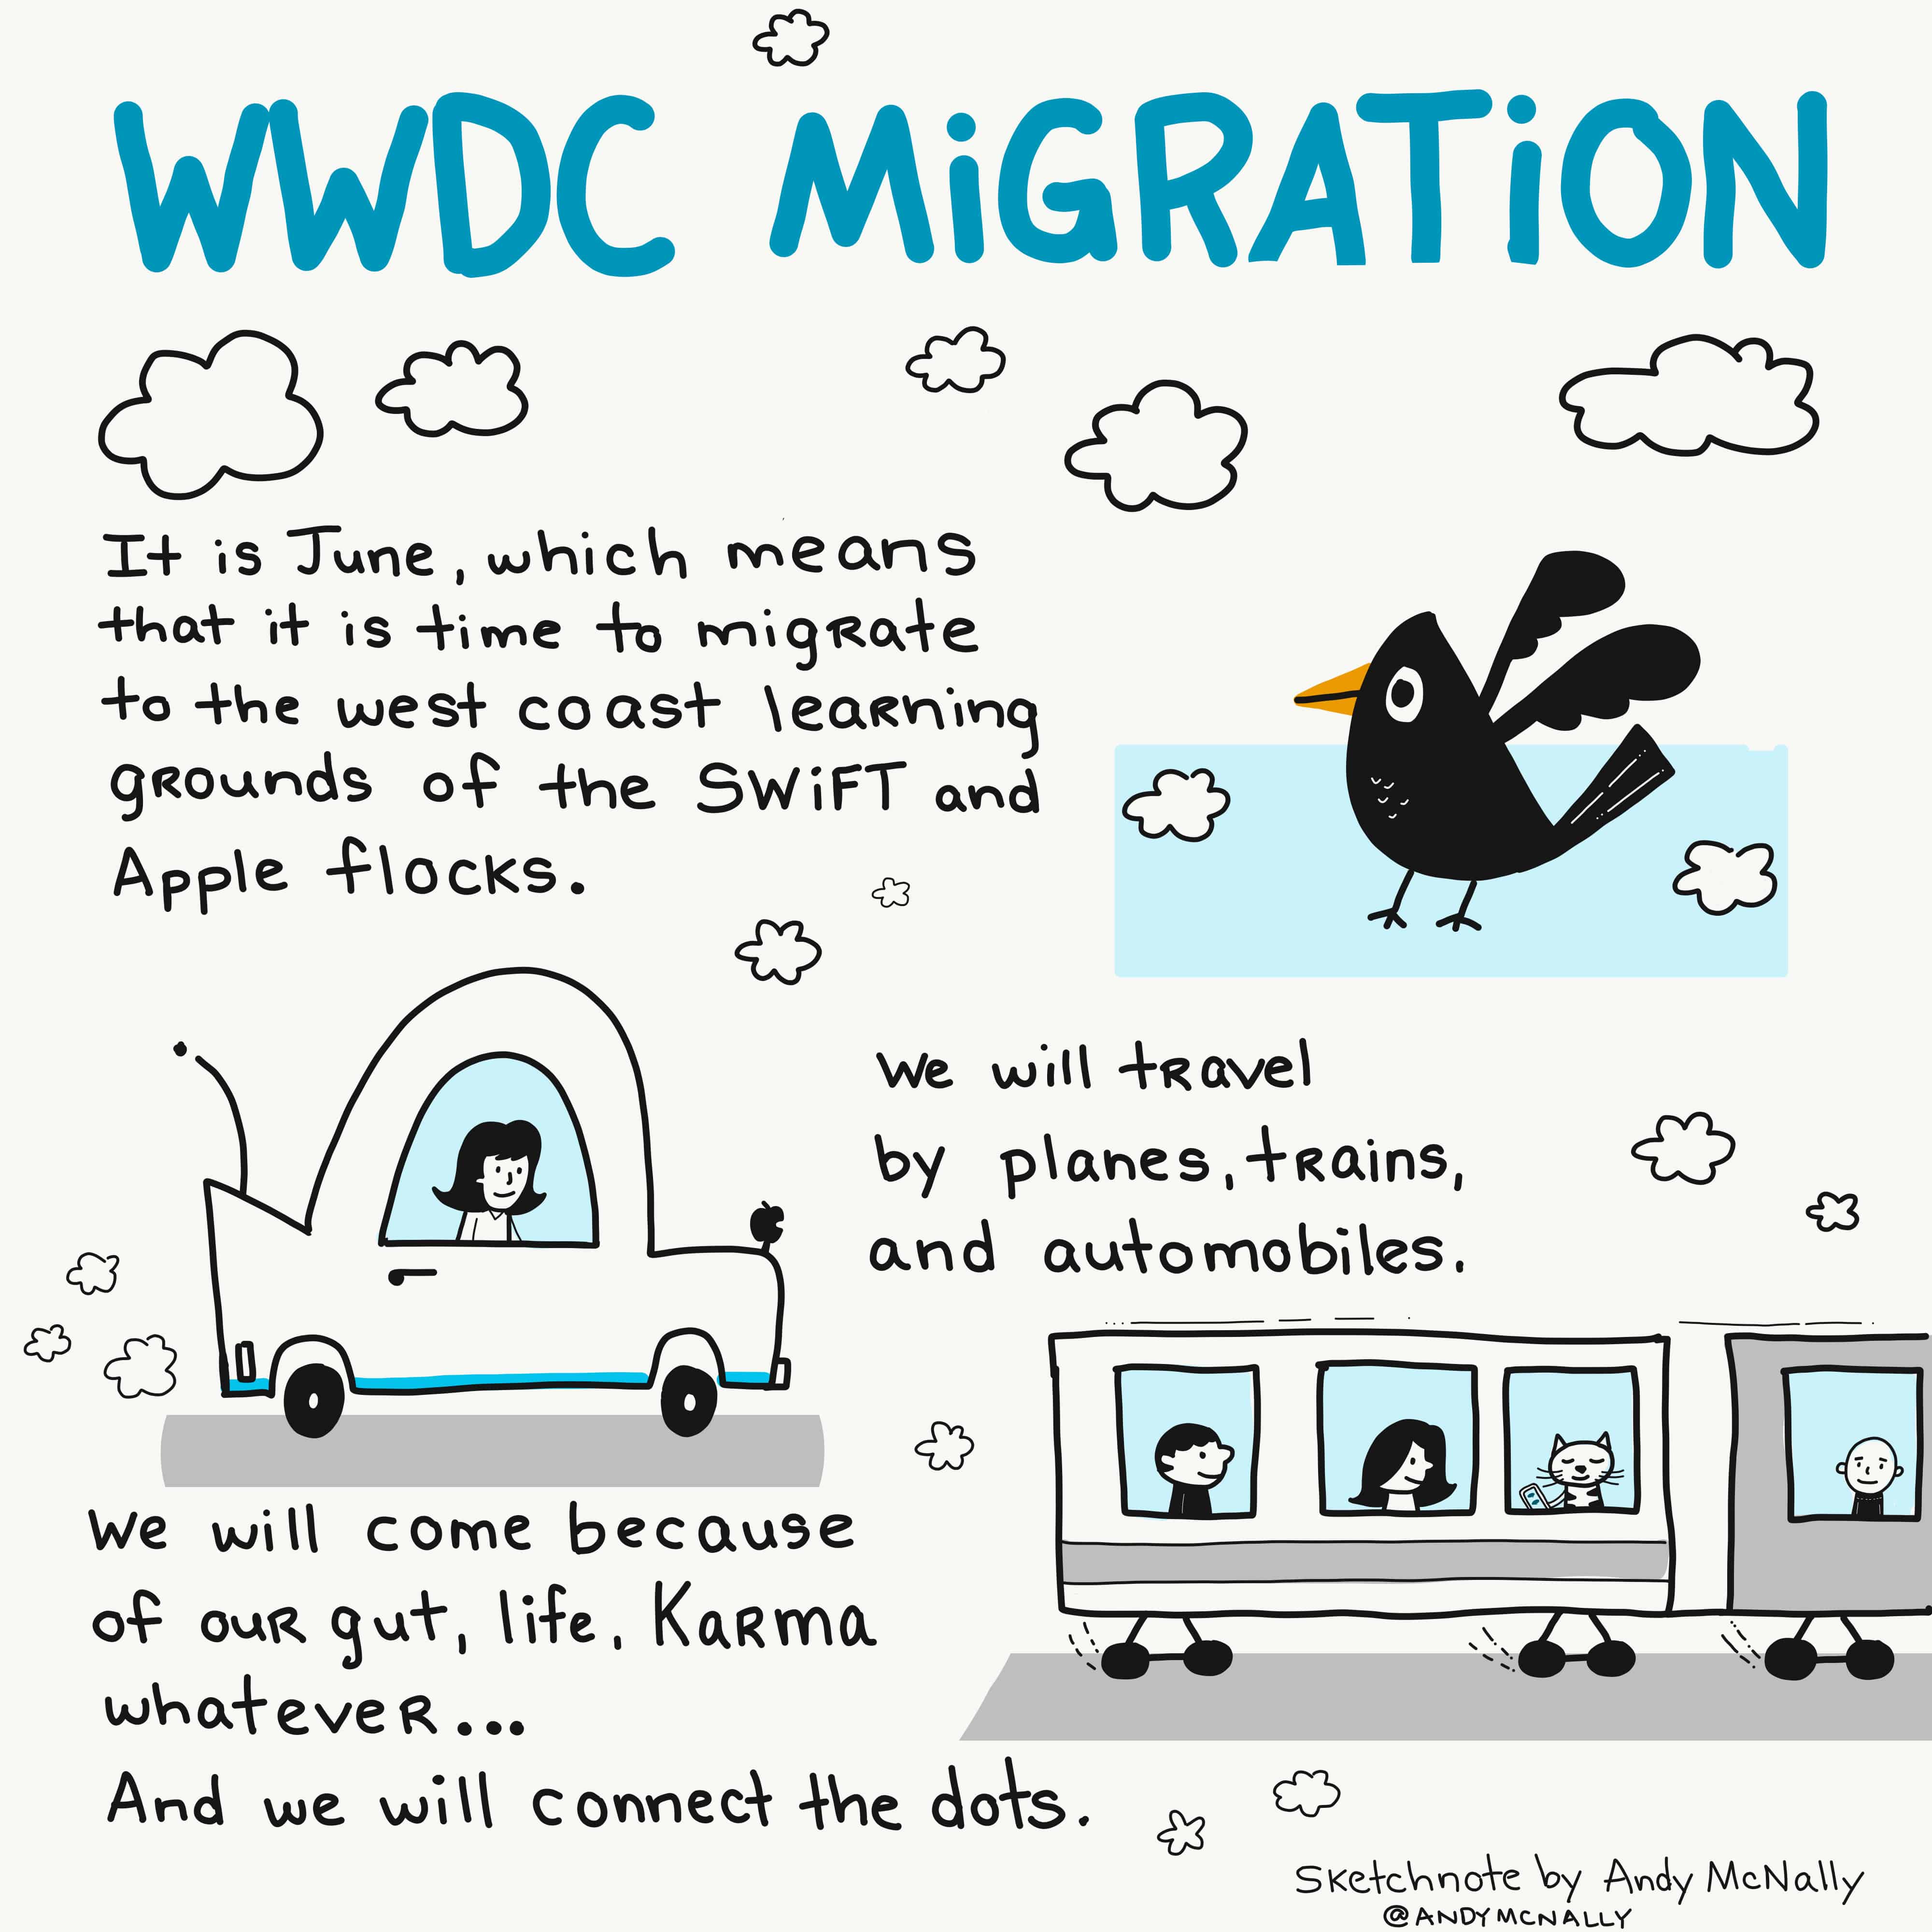 WWDC migration sketchnote